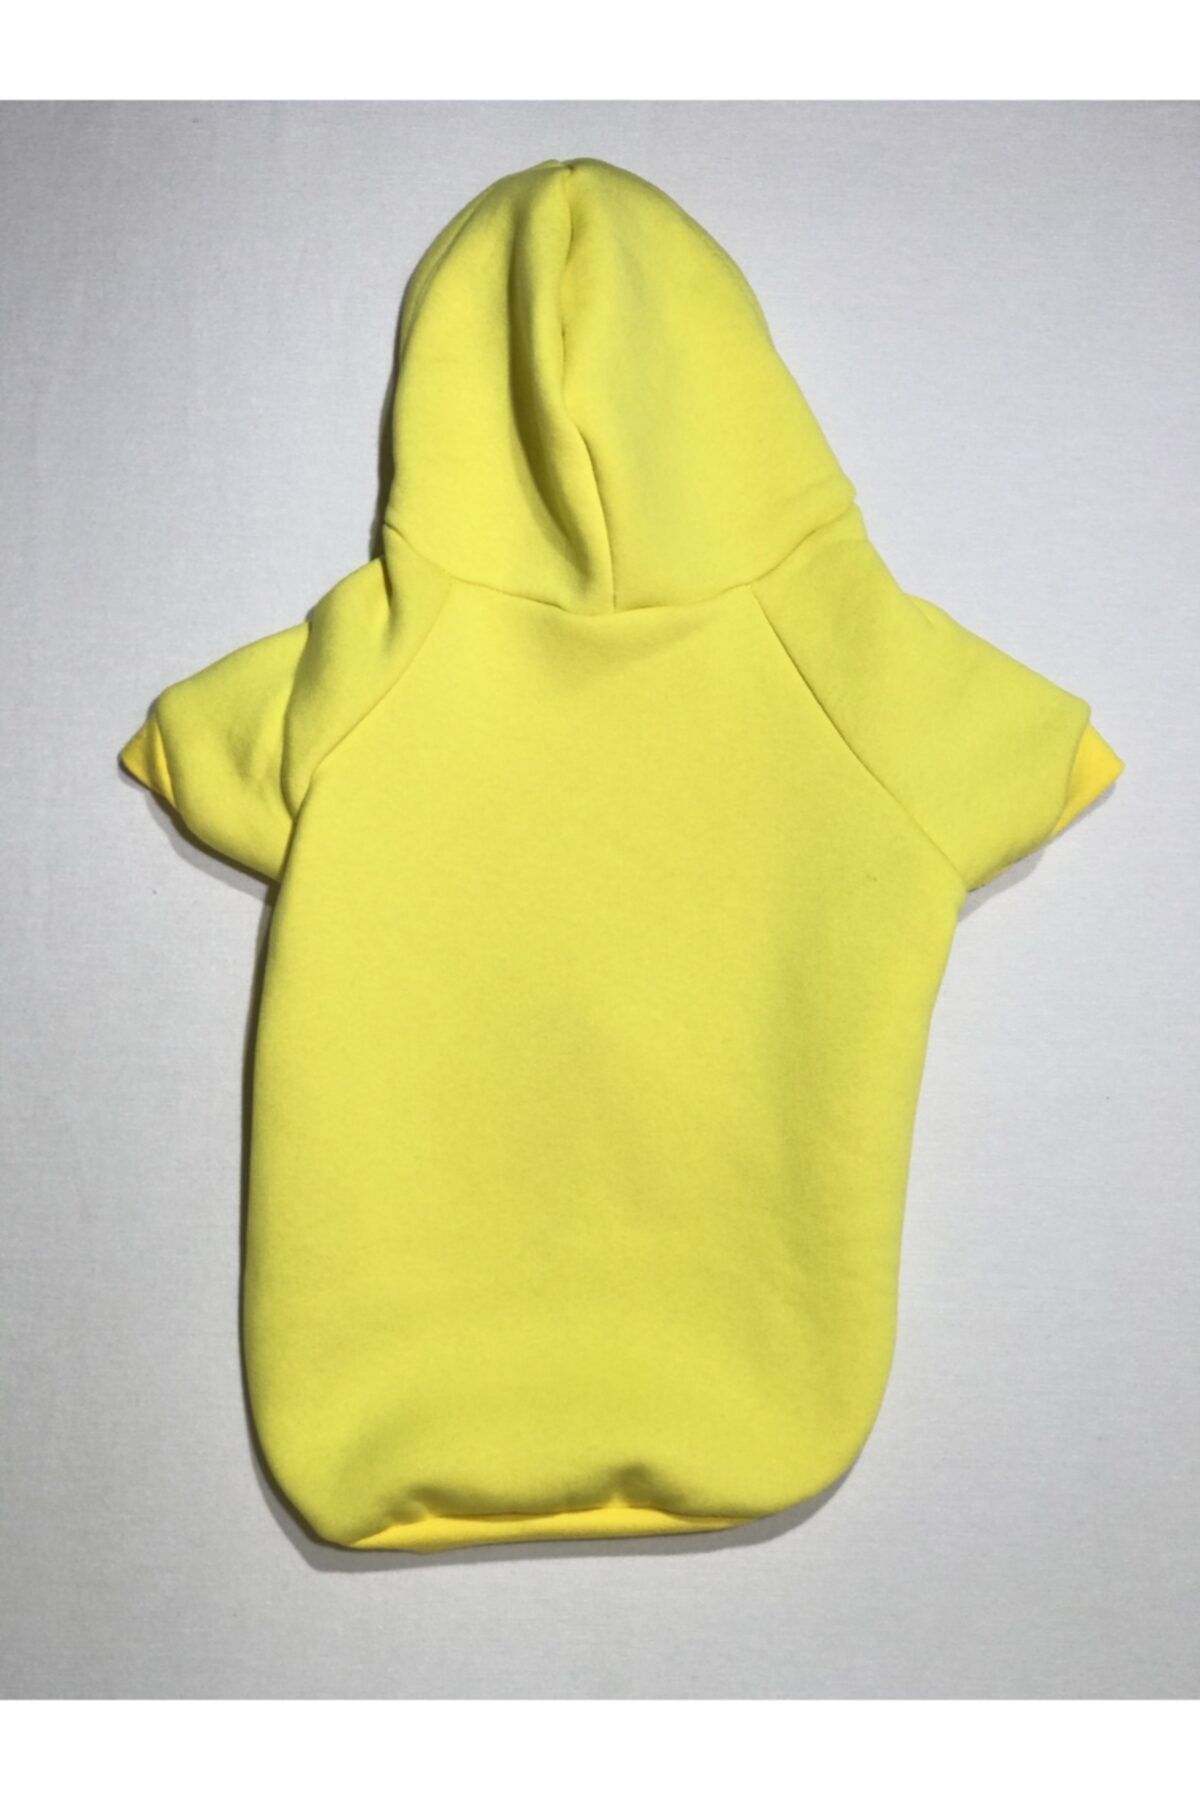 Casper Sarı Sweatshirt - Kedi-köpek Kıyafet